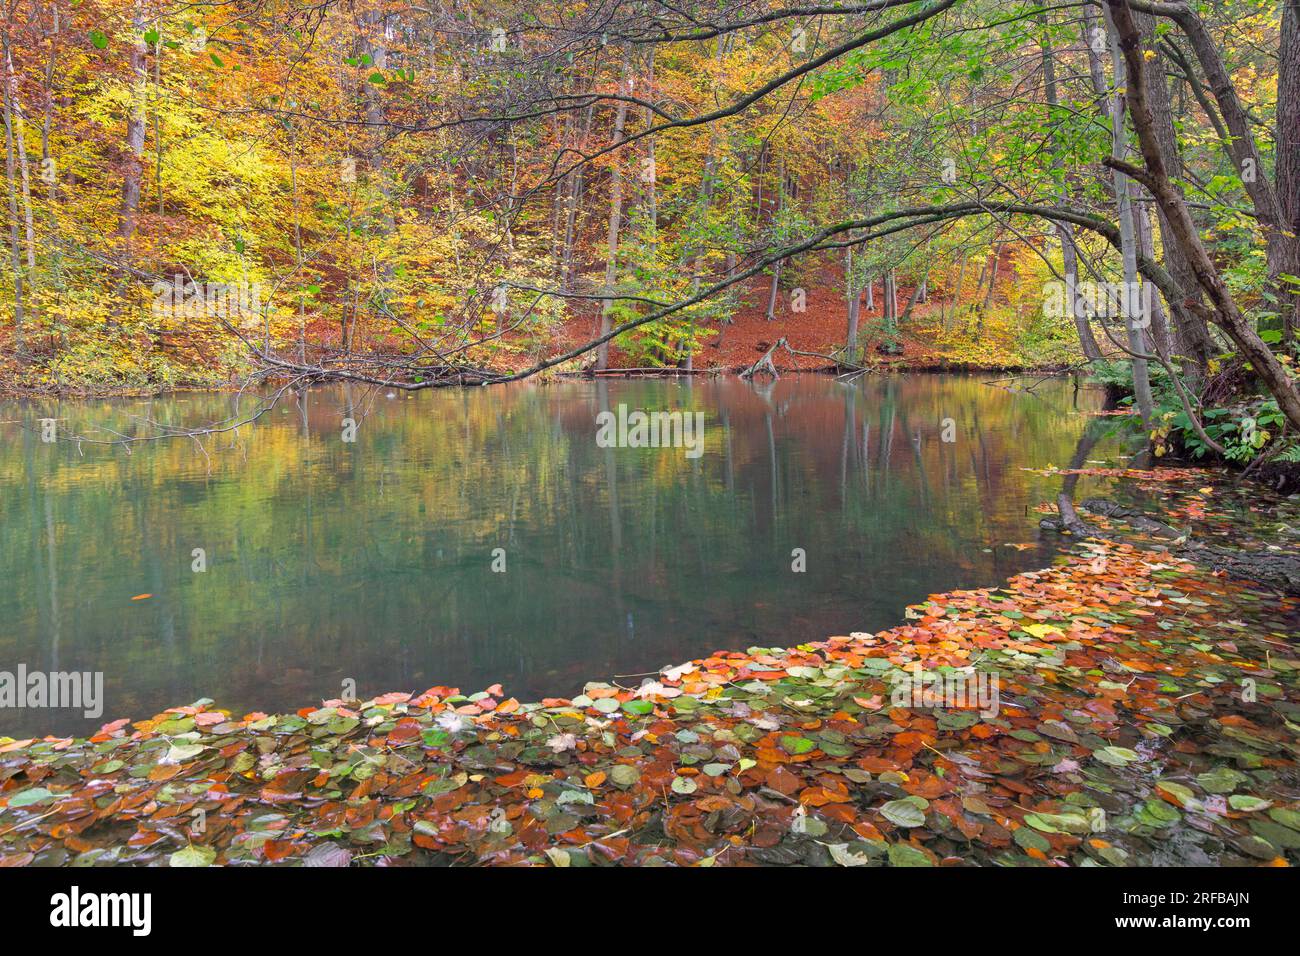 Feuilles d'automne tombées flottant dans l'eau de la rivière Pinnau coulant à travers la forêt de feuillus montrant des couleurs d'automne, Schleswig-Holstein, Allemagne Banque D'Images